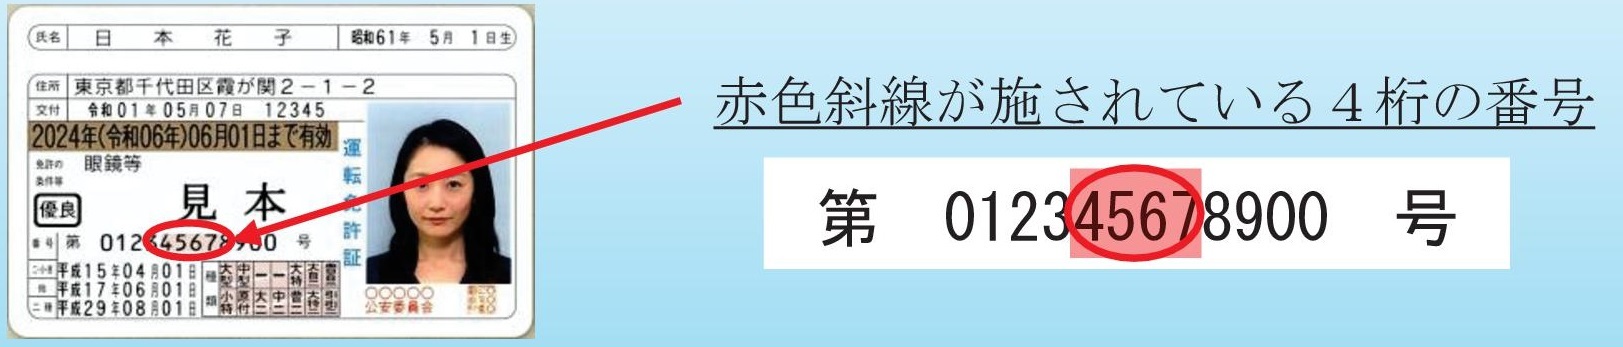 暗証番号利用例として表示している免許番号内の赤色斜線が施されている4桁の番号の画像